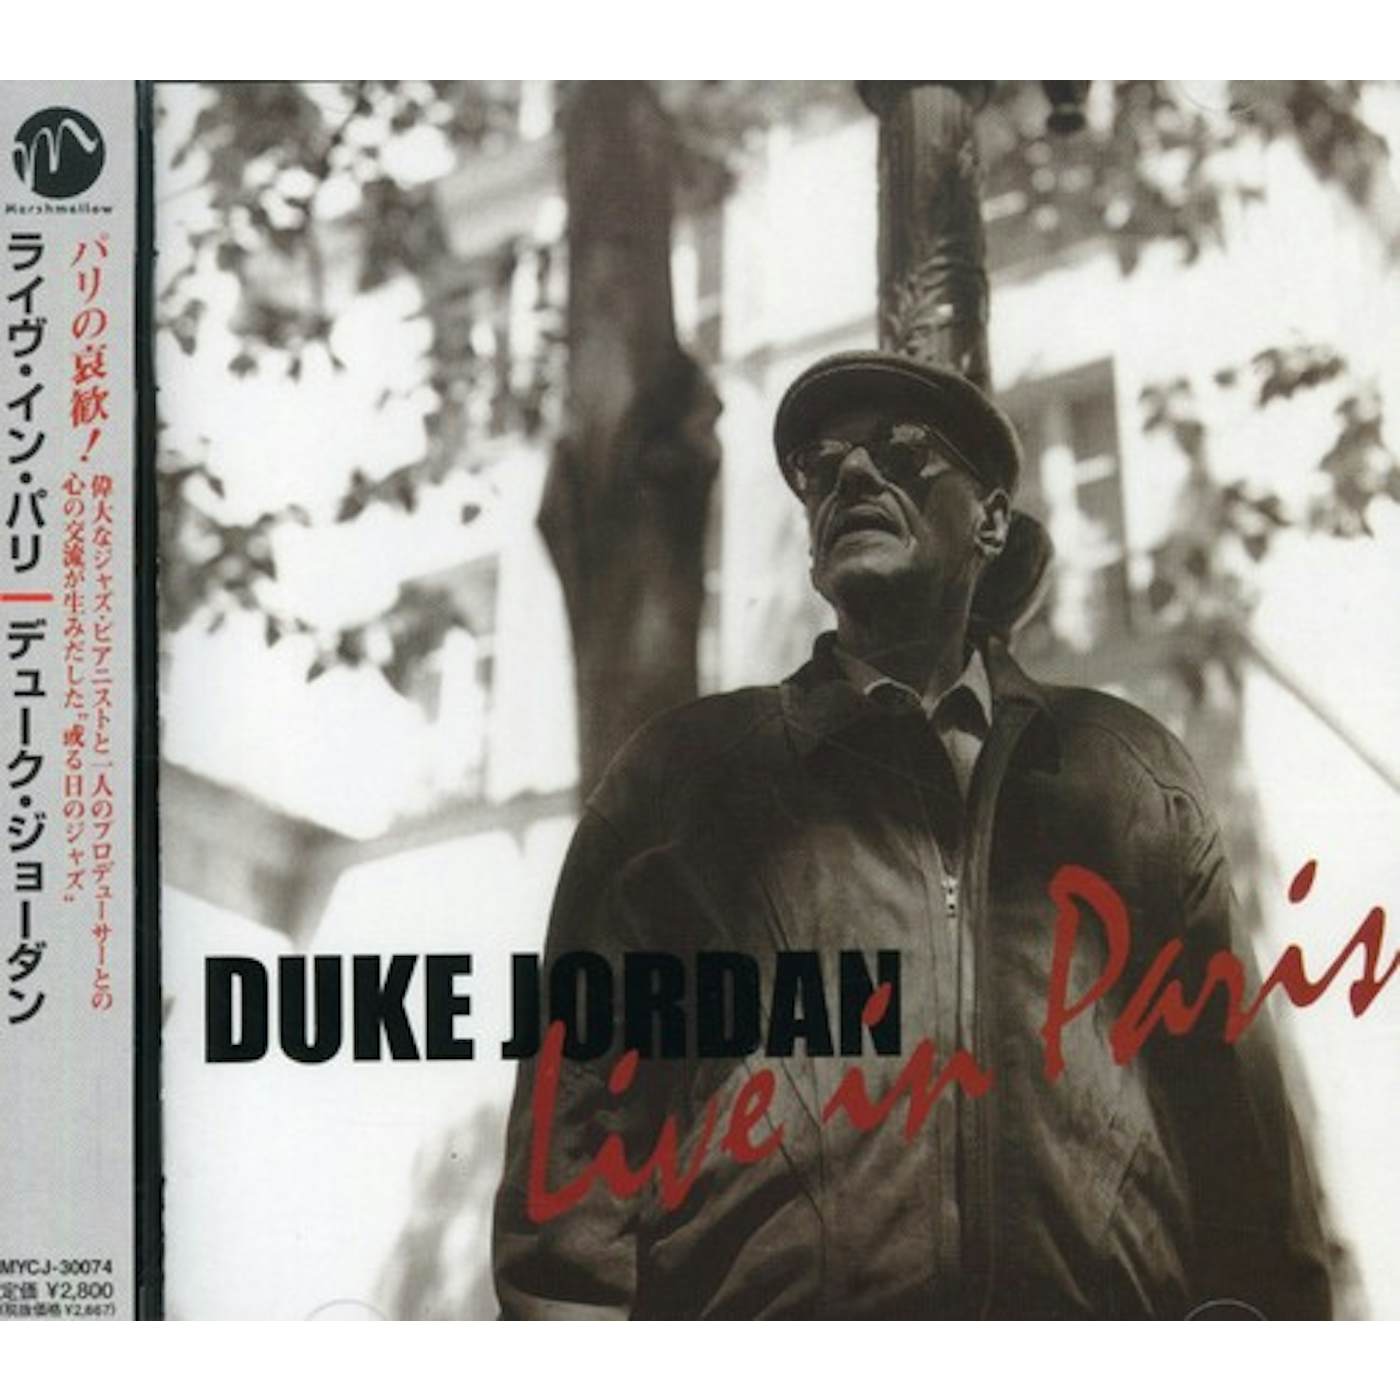 Duke Jordan LIVE IN PARIS CD